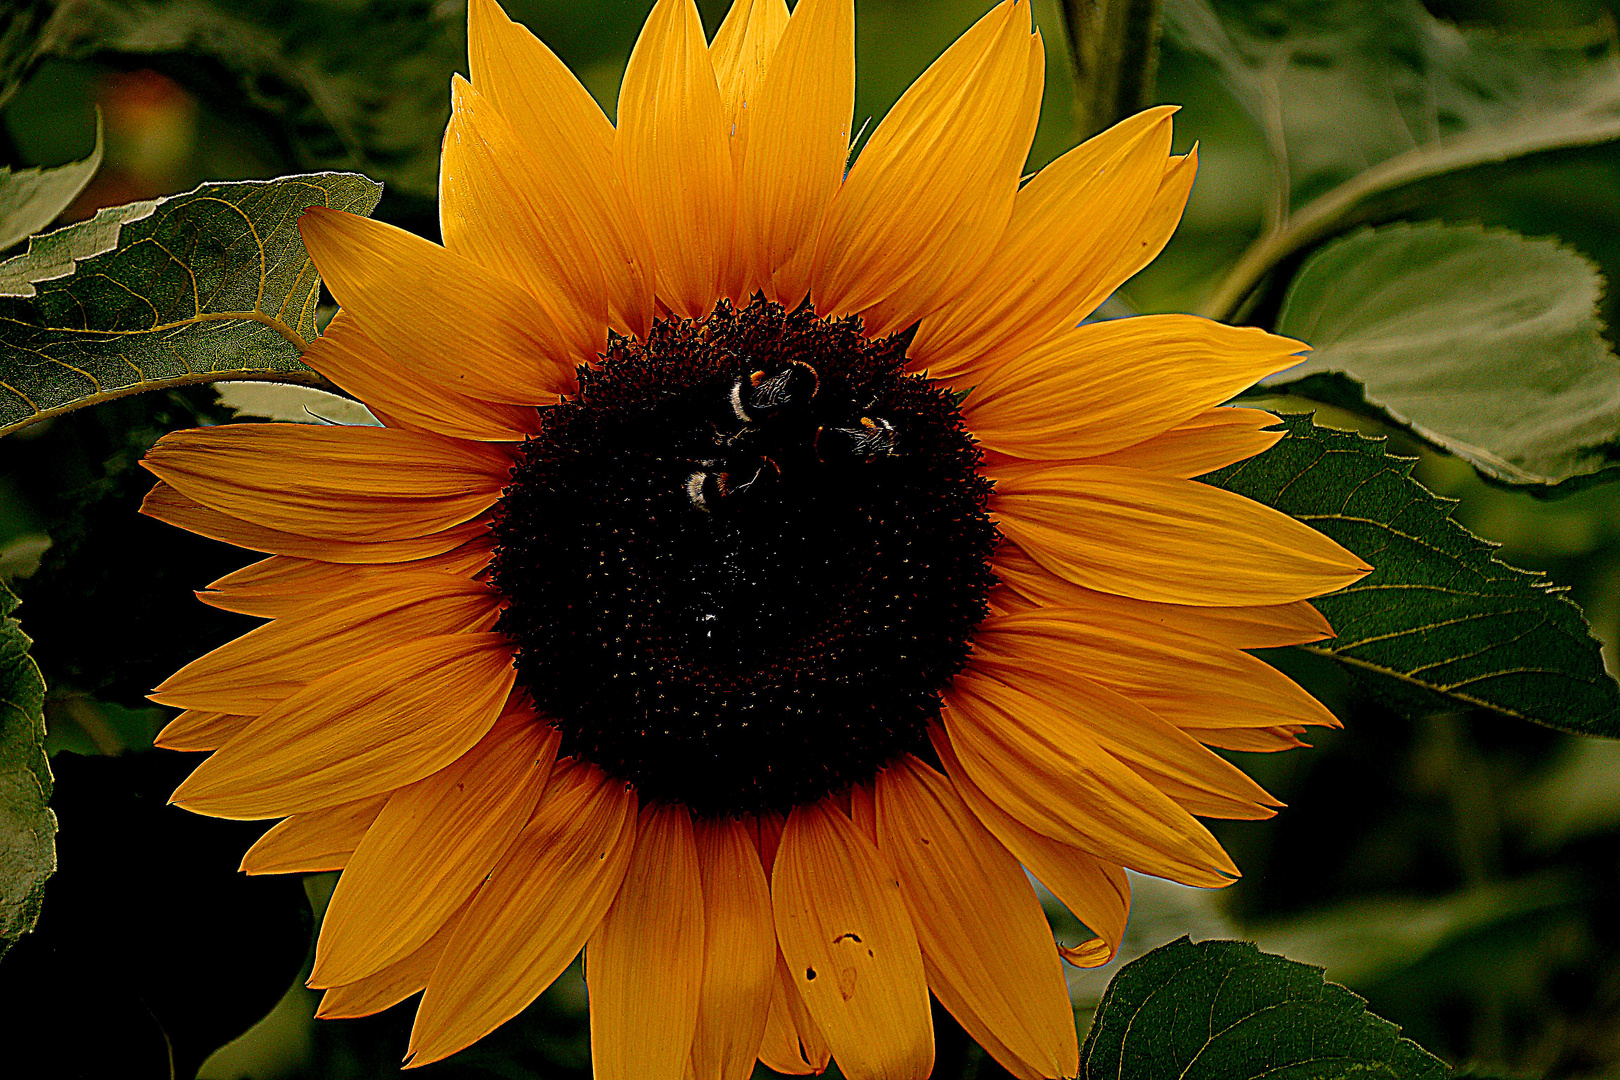 Strahlendes Gesicht einer Sonnenblume mit Besucher.